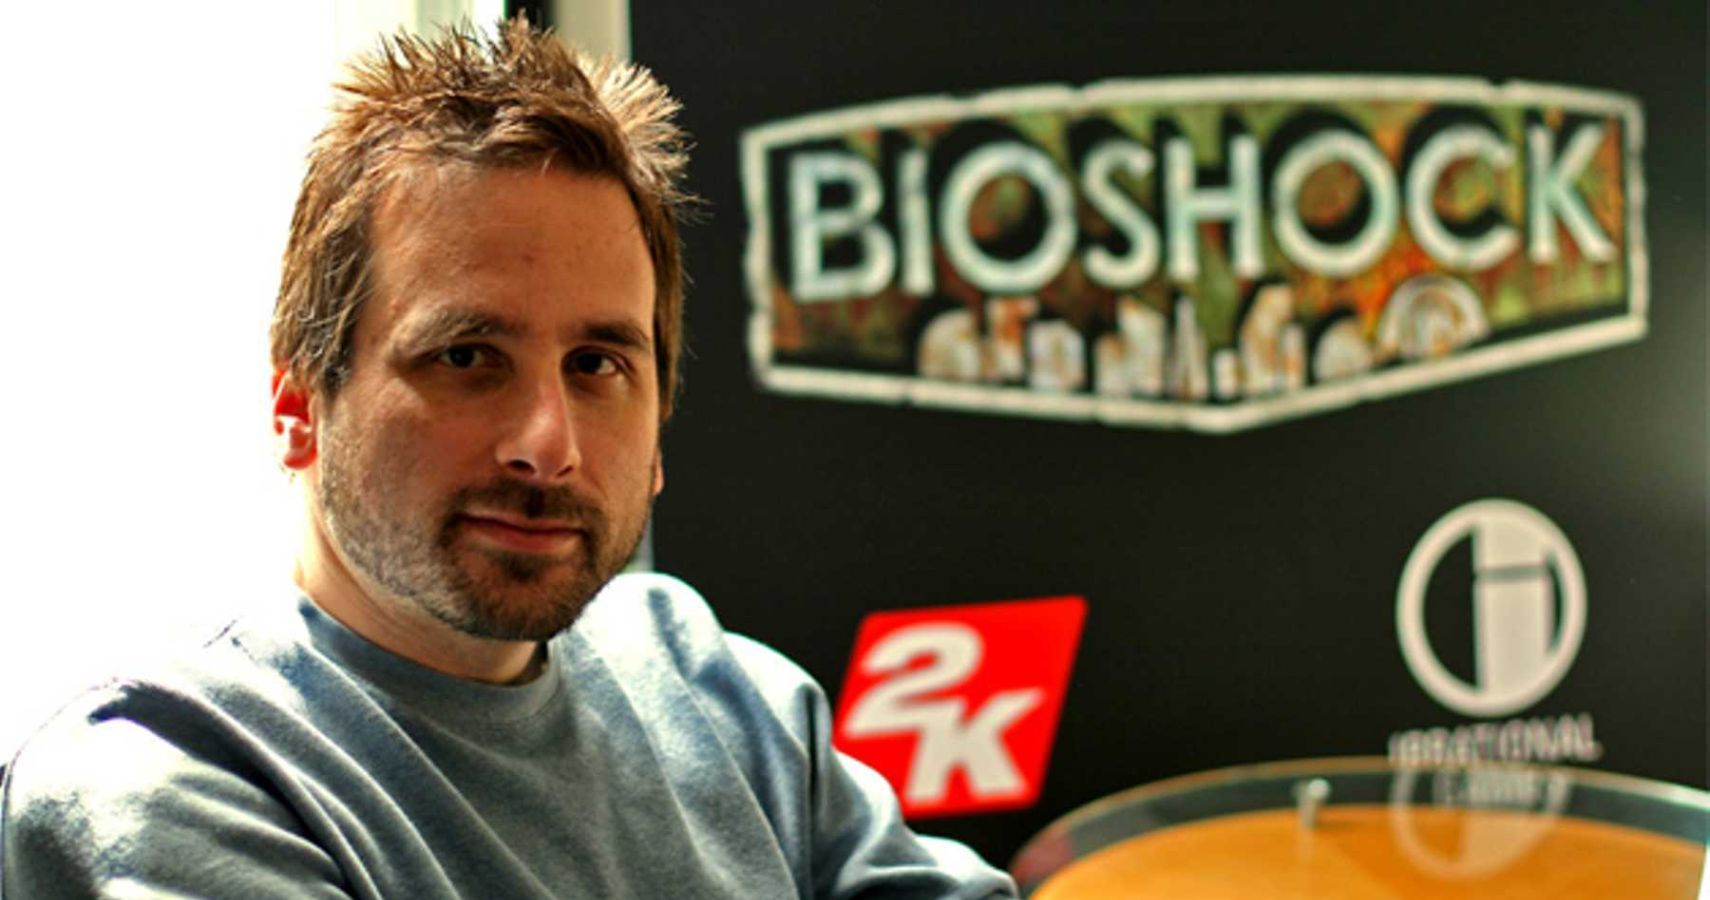 Ken Levine BioShock Blue Jumper